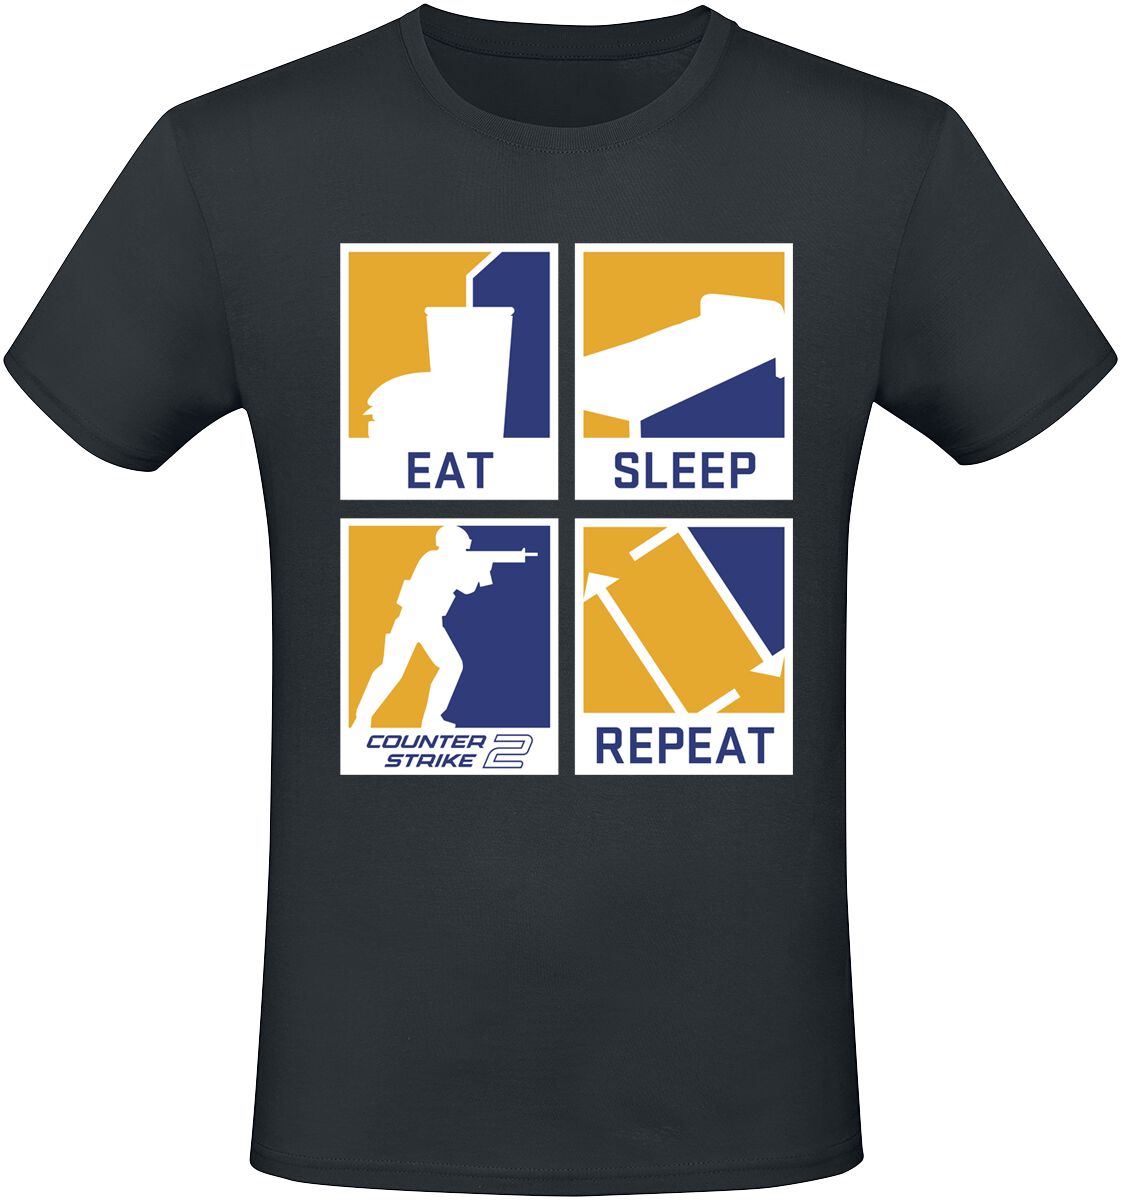 Counter-Strike - Gaming T-Shirt - 2 - Eat Sleep Repeat - S bis XXL - für Männer - Größe L - schwarz  - EMP exklusives Merchandise!